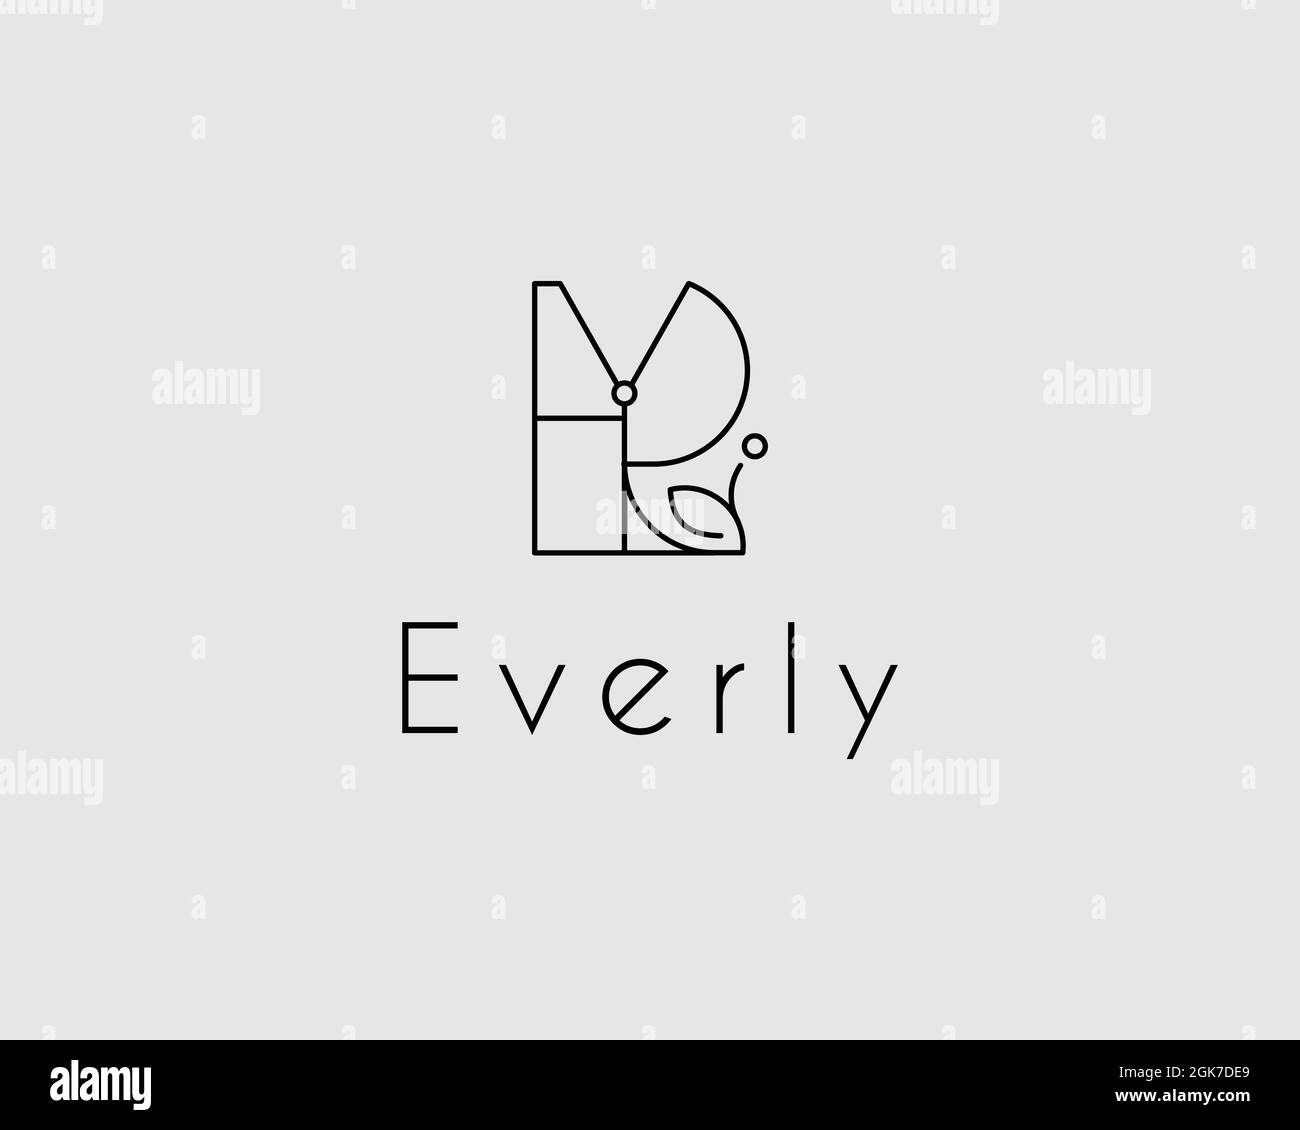 logo name Everly usable logo design for private logo, business name card web icon, social media icon Stock Vector